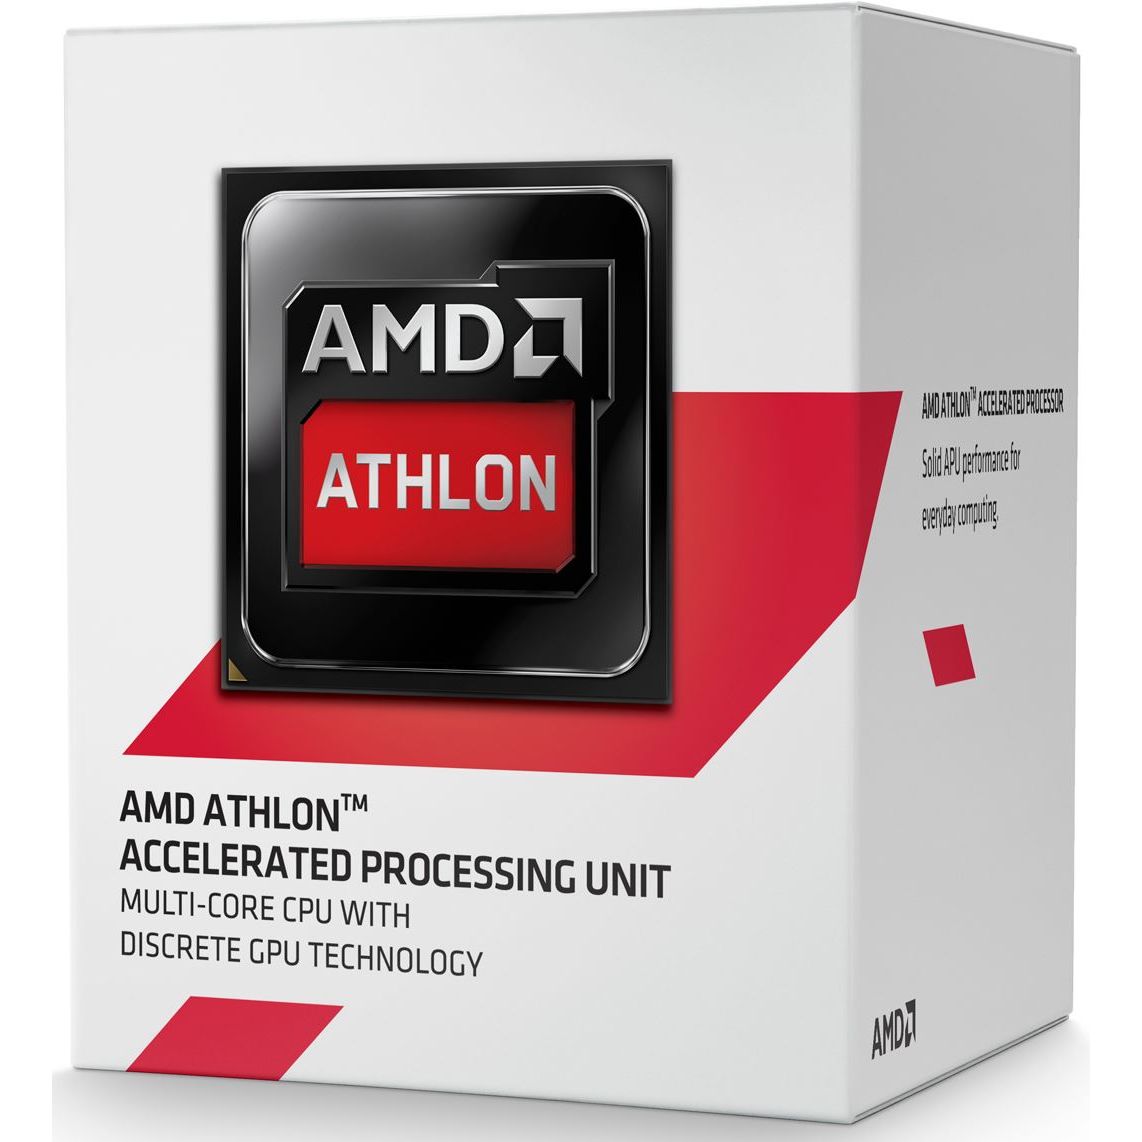 AMD - AMD Athlon 5350 2.05GHz Quad Core Processor - Retail (Socket AM1)